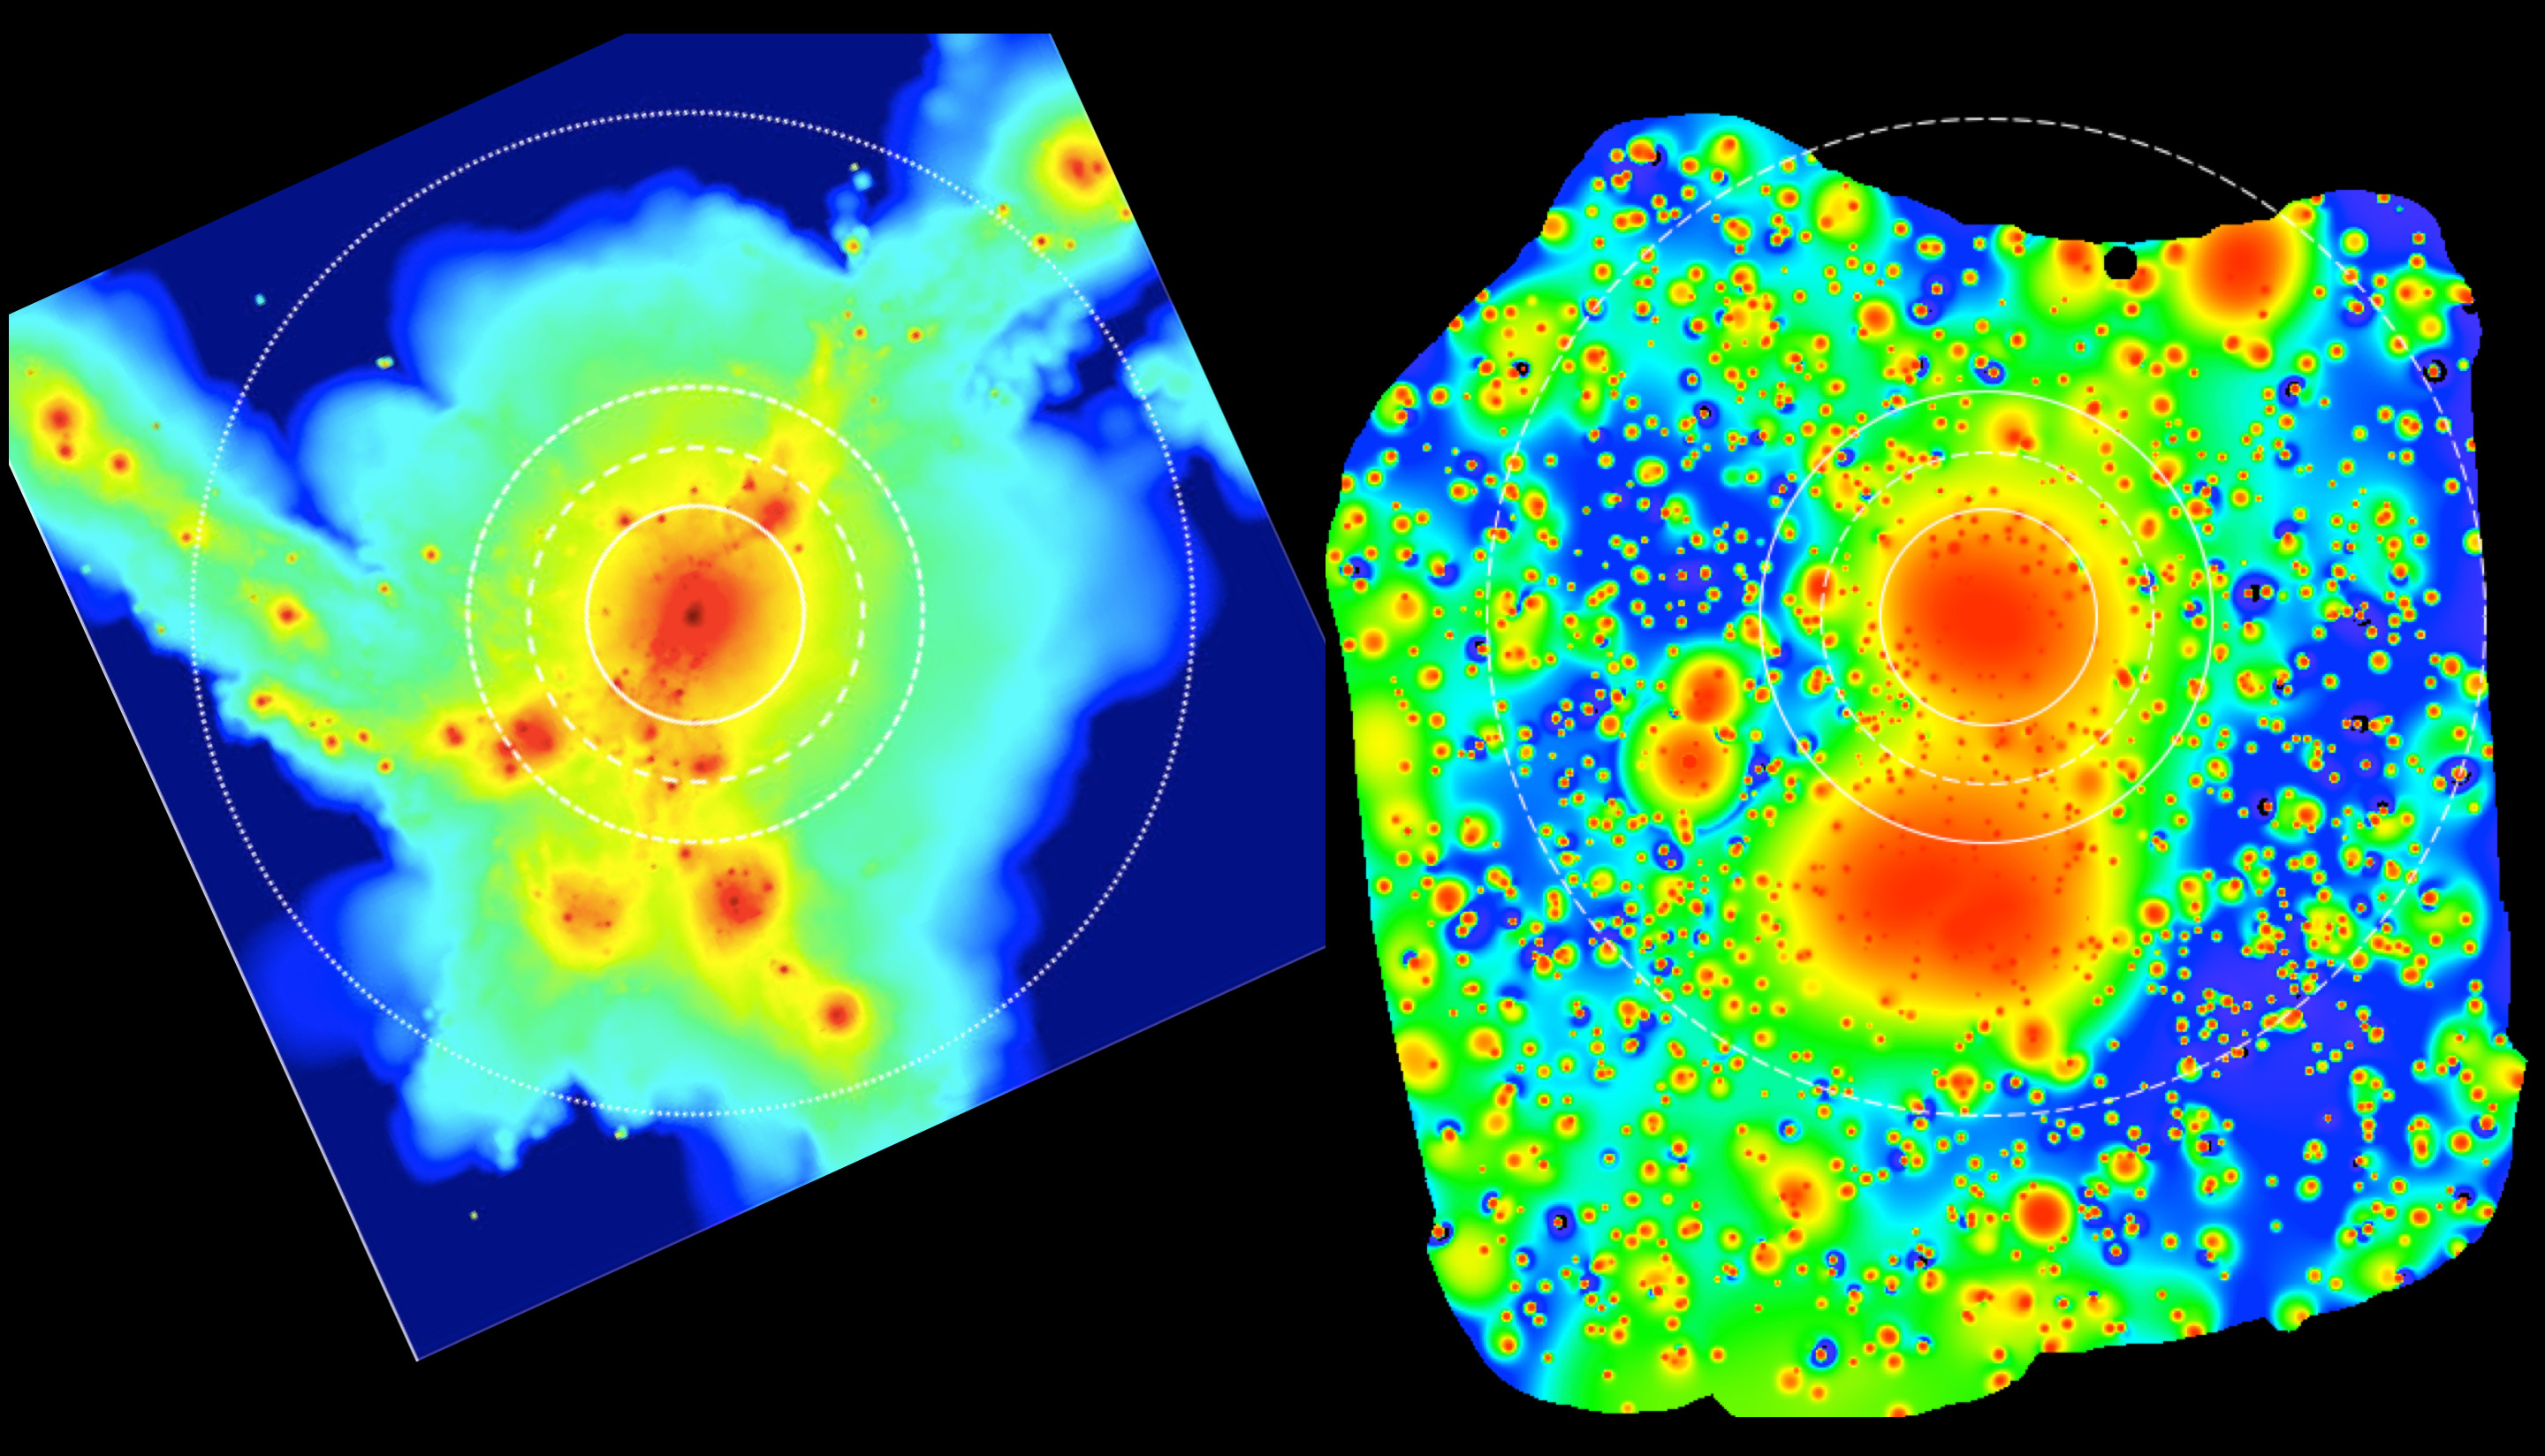 In dieser Darstellung der eROSITA-Aufnahme sind auch die sehr leuchtschwachen Gebiete aus dünnem Gas sichtbar, zum Vergleich links wieder eine Simulation